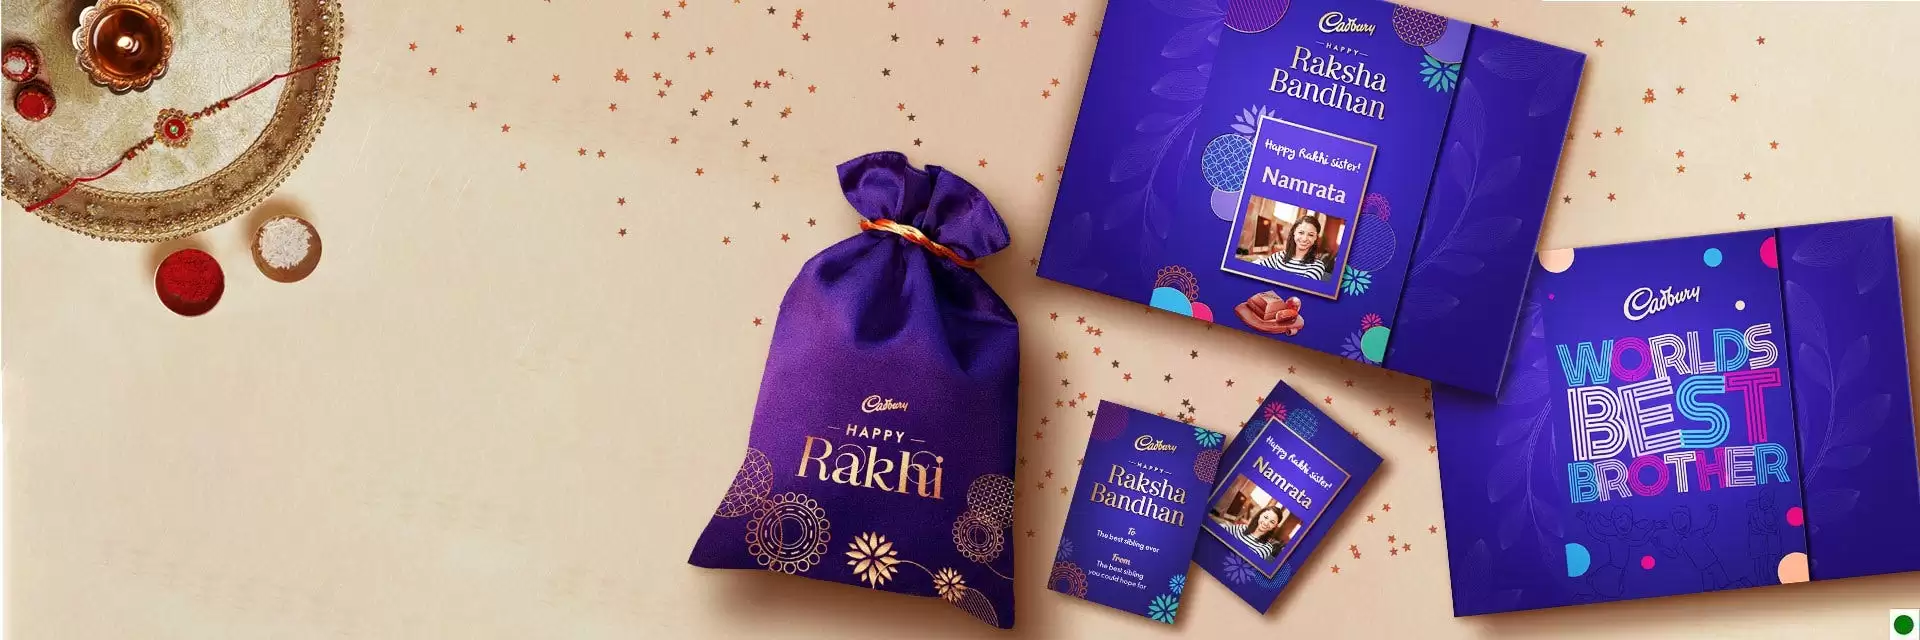 Buy Rakhi Cadbury Gift Sets As Low As Rs.500 + Free Shipping At Cadburygifting.In Deal Page